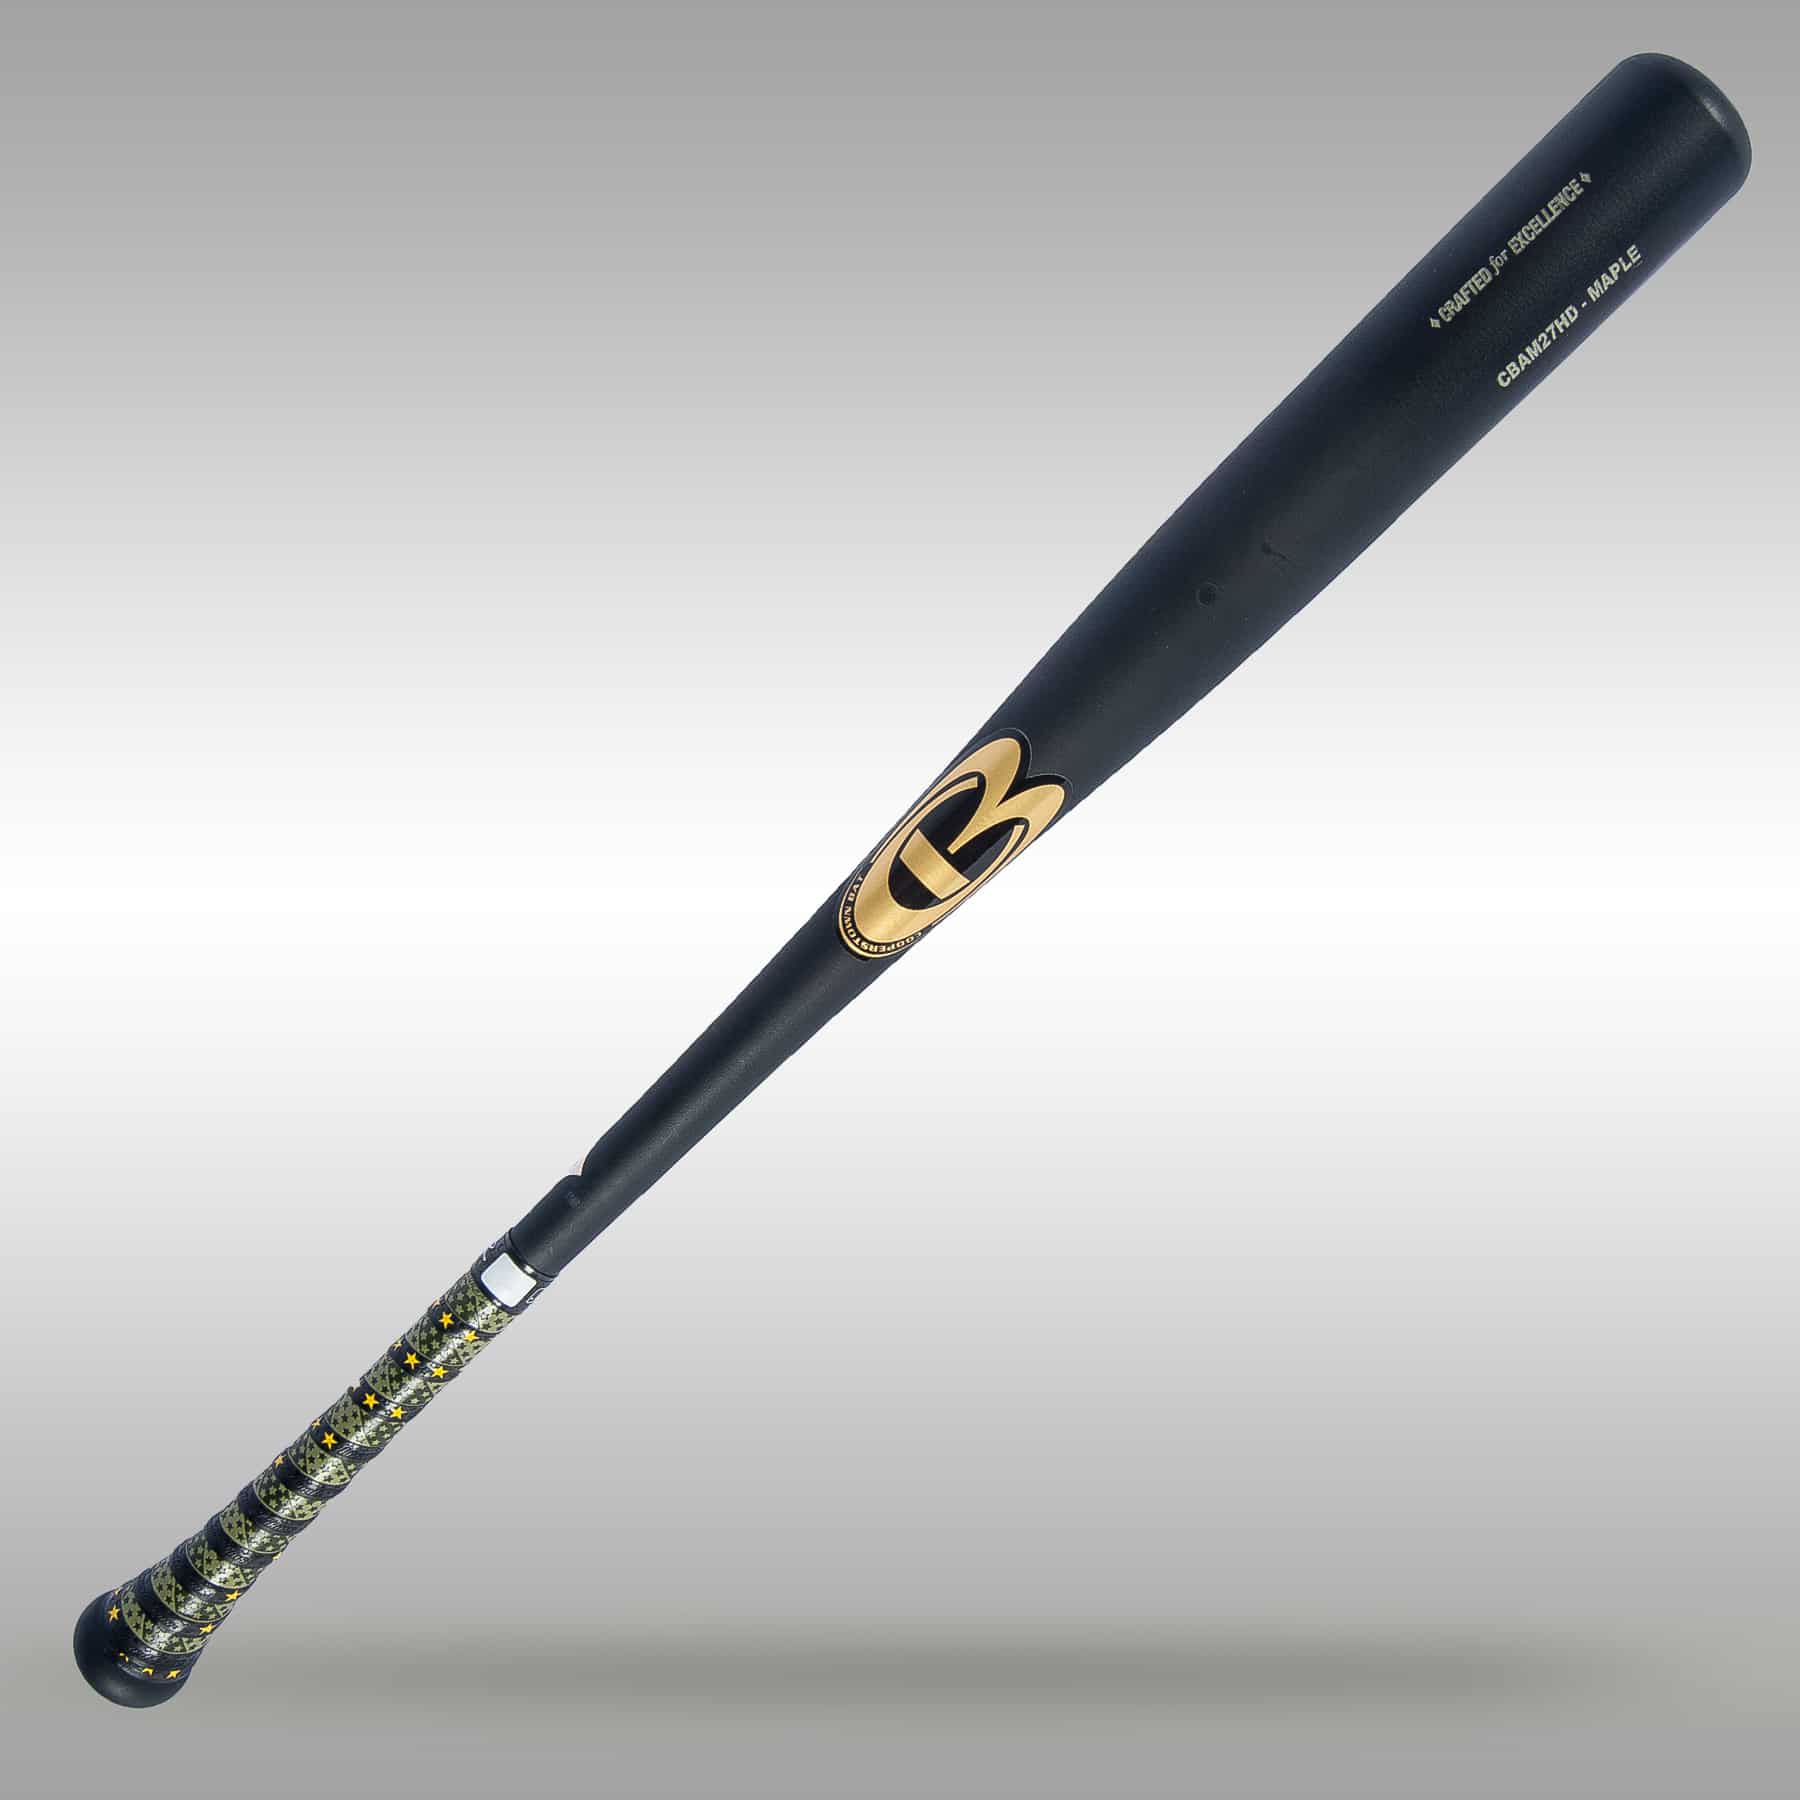 CBAM27HD Pro Maple Wood Baseball Bat Cooperstown Bat Company